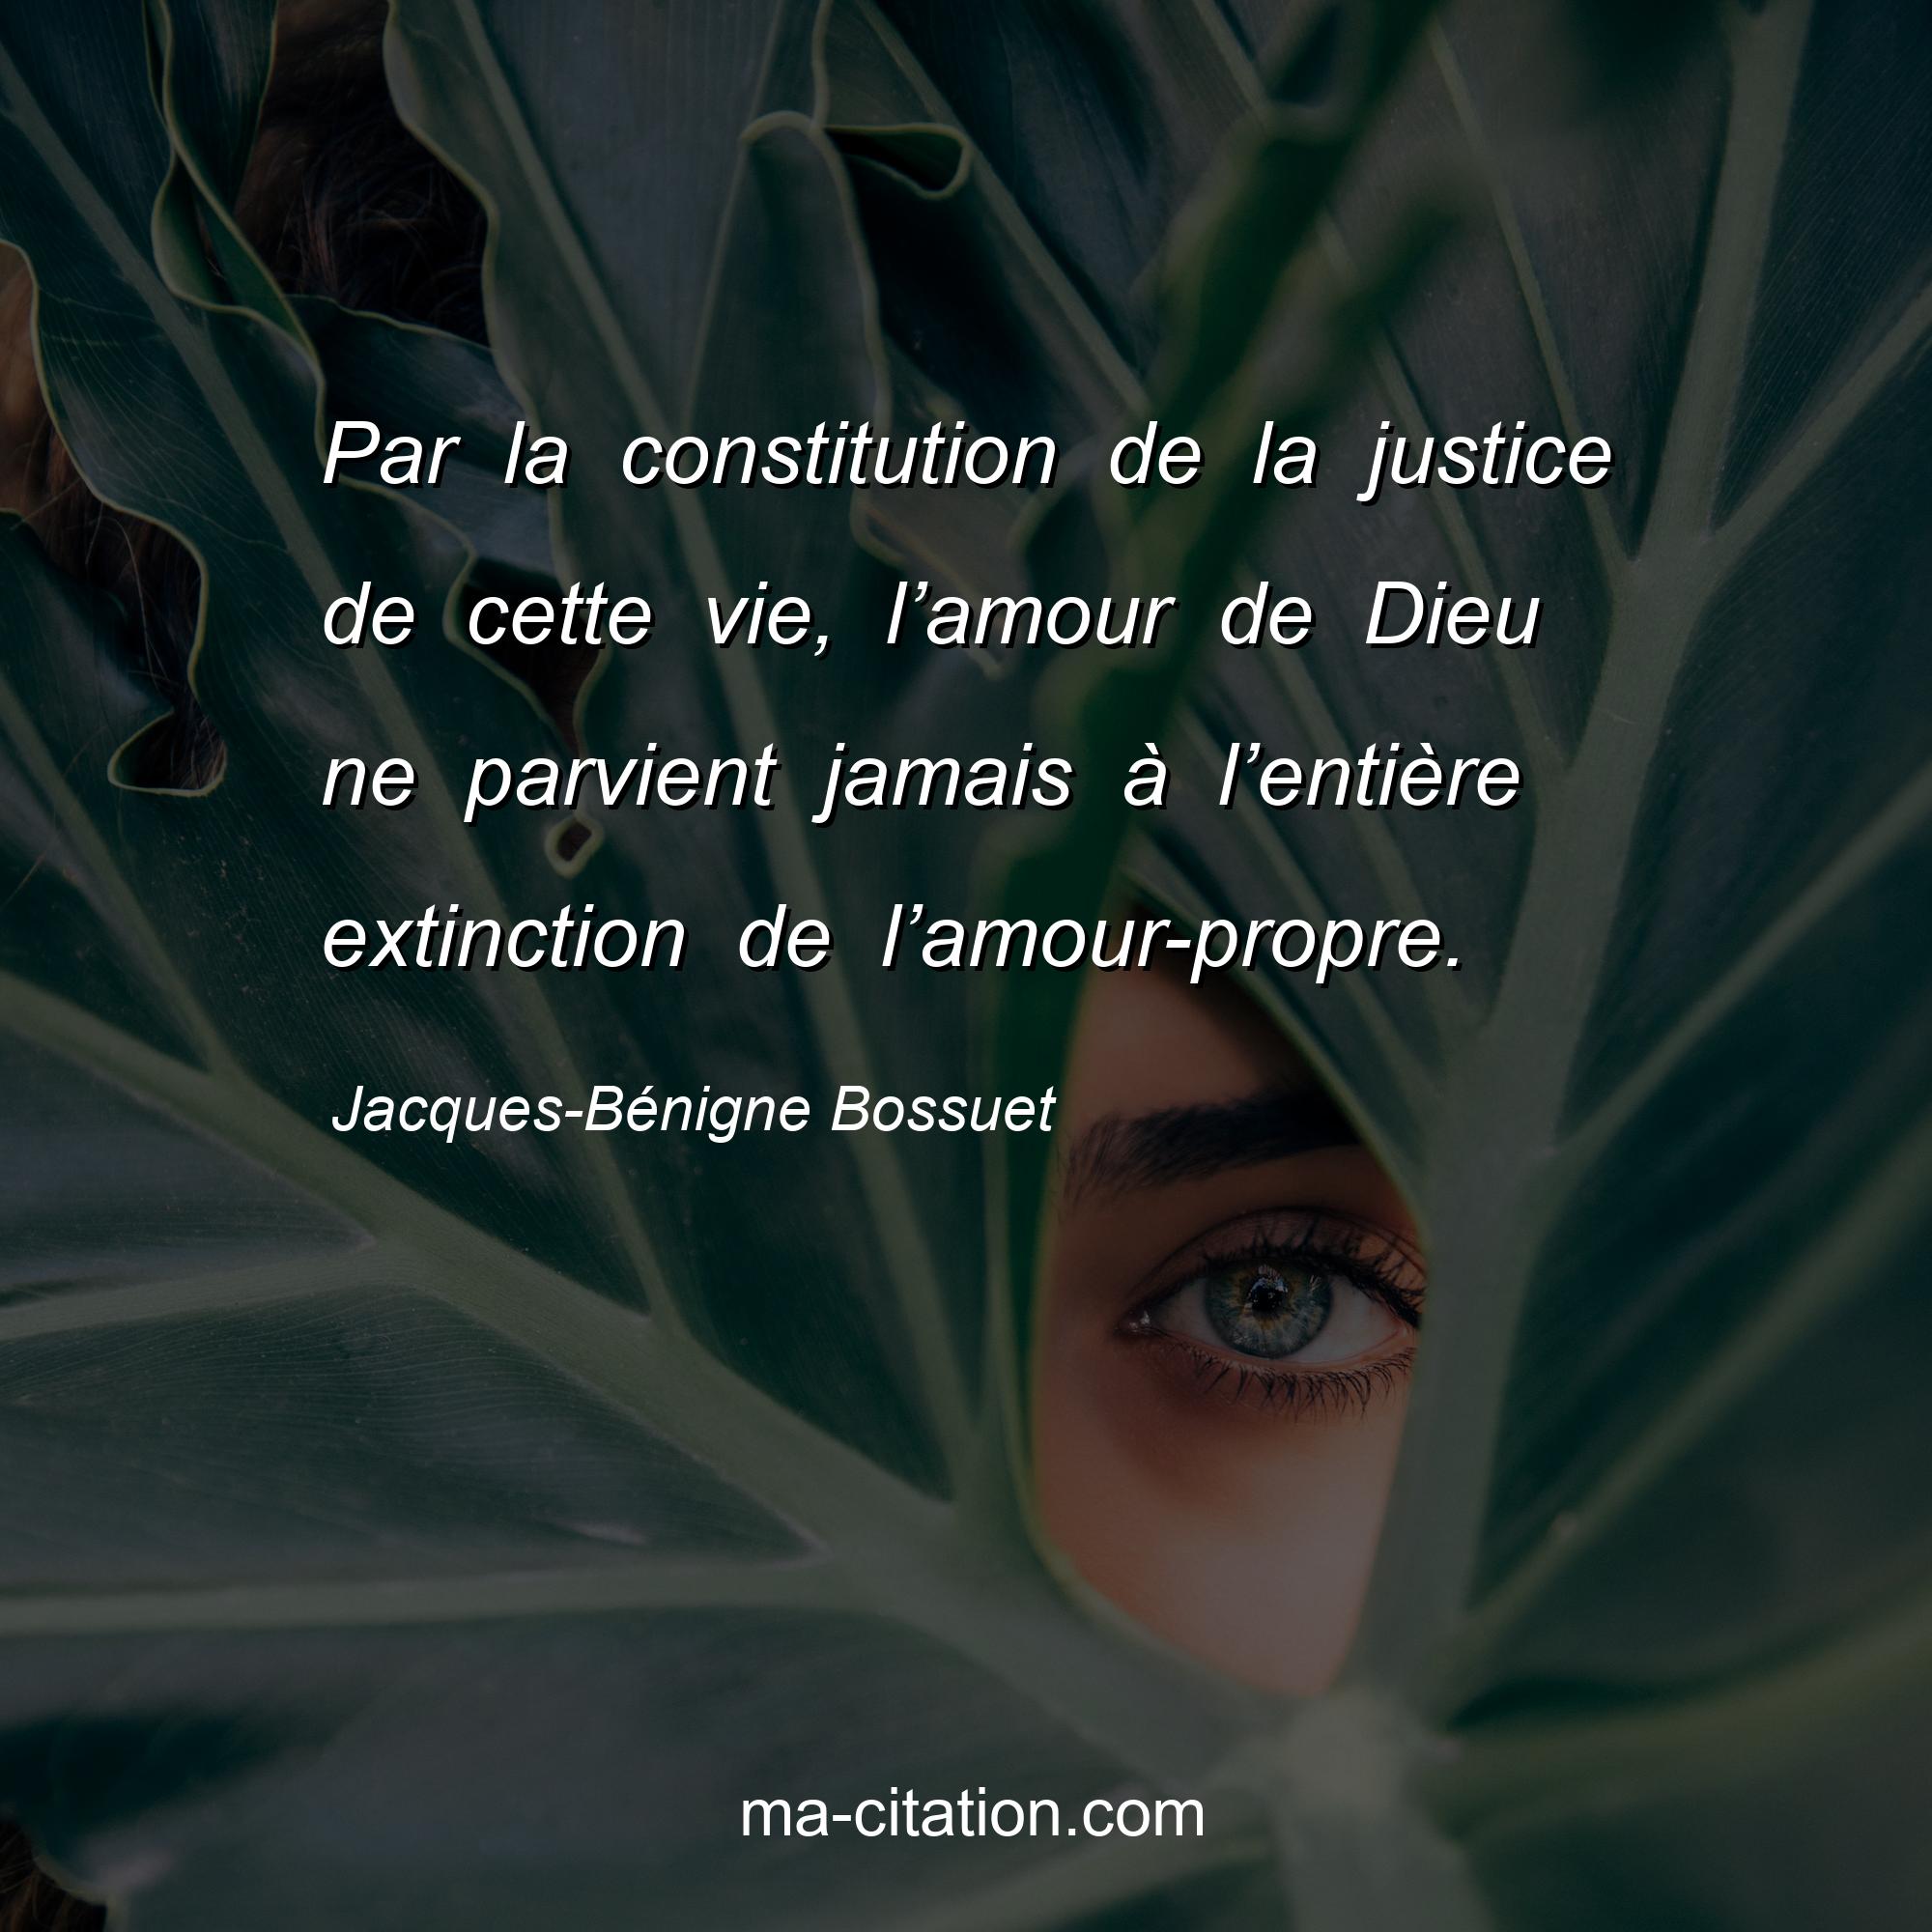 Jacques-Bénigne Bossuet : Par la constitution de la justice de cette vie, l’amour de Dieu ne parvient jamais à l’entière extinction de l’amour-propre.